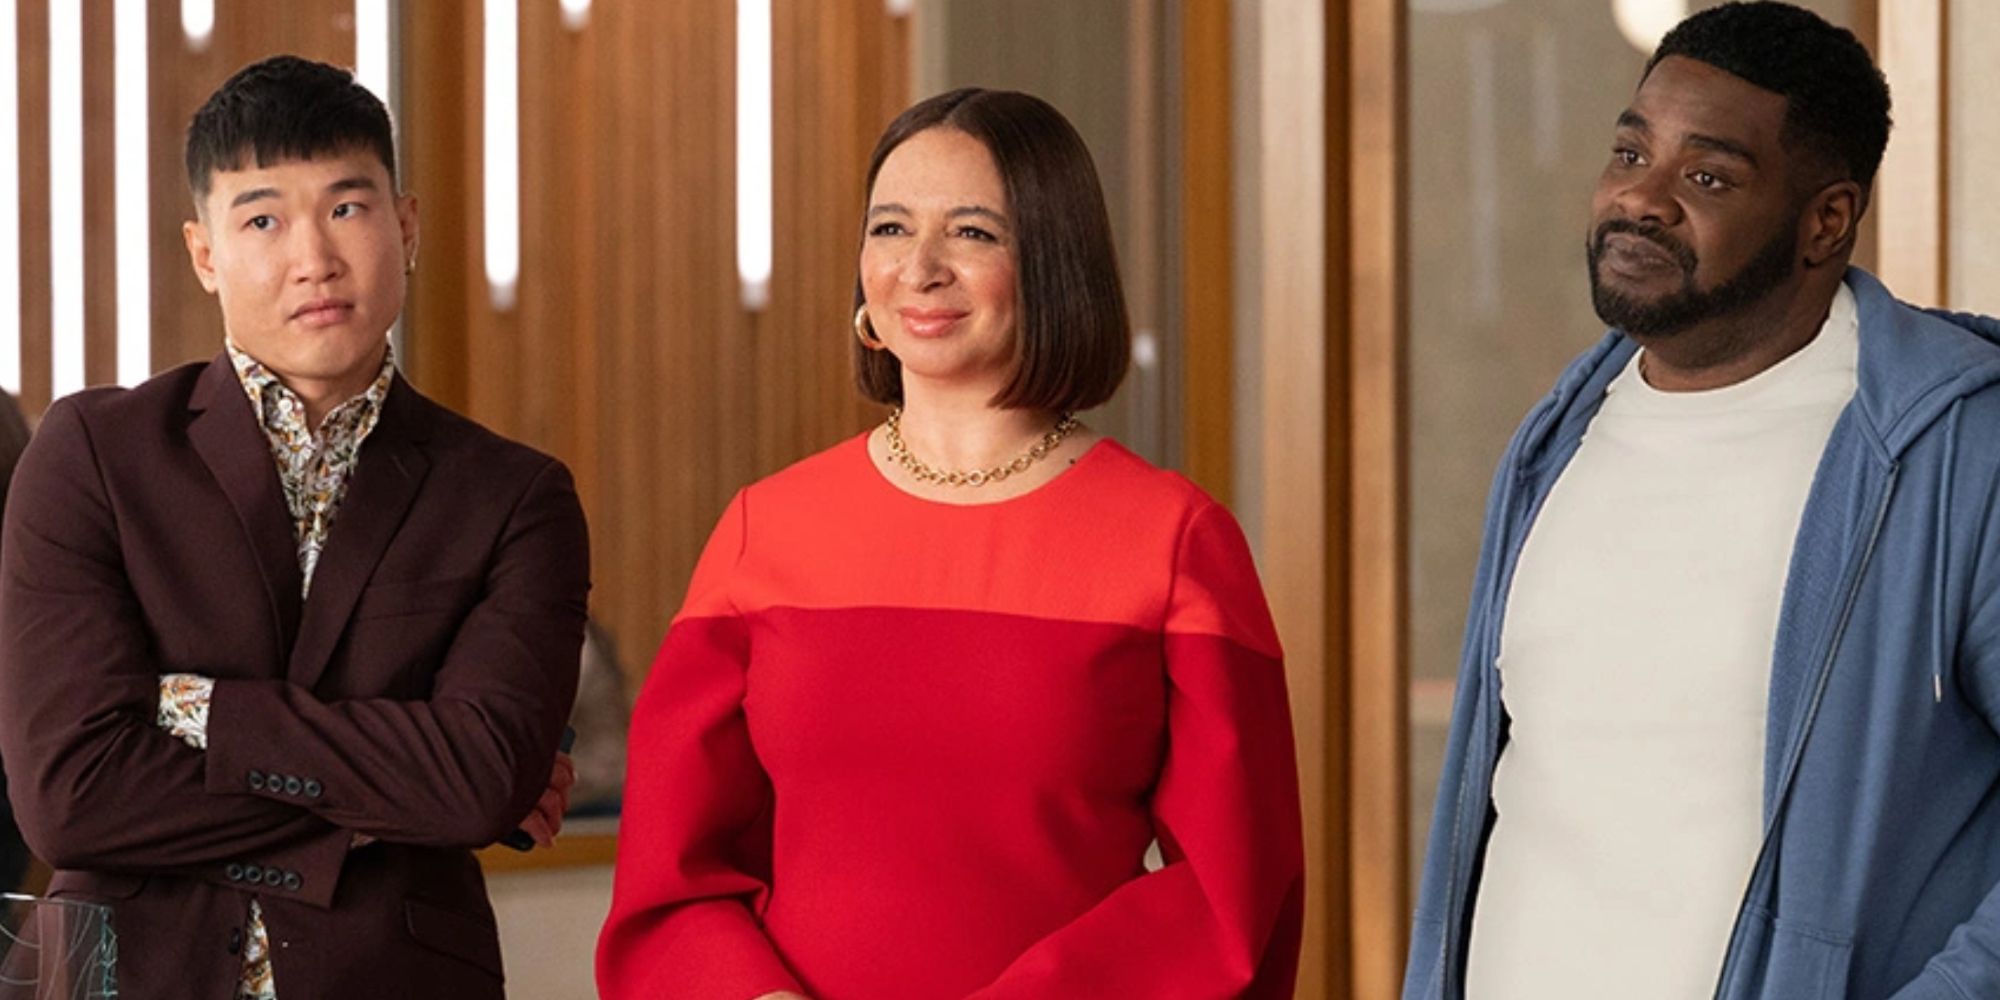 Tiga karakter dari Loot berdiri bersama di kantor sambil tersenyum.